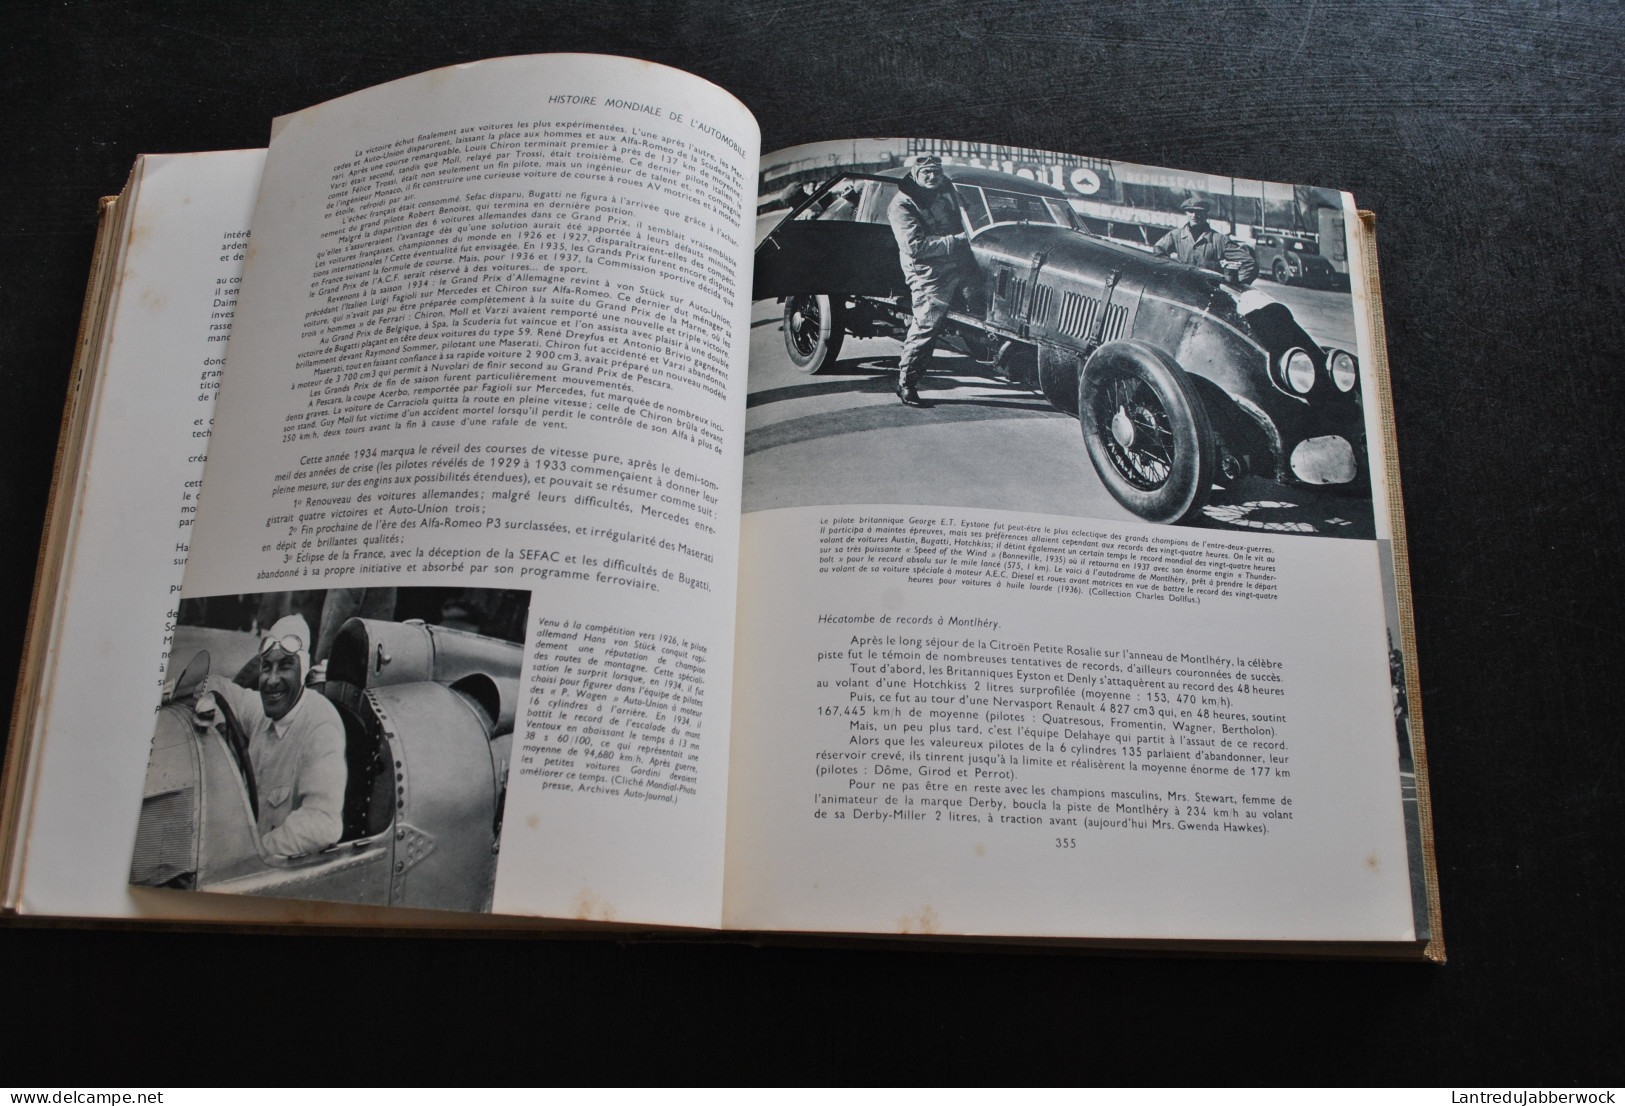 JACQUES ROUSSEAU HISTOIRE MONDIALE DE L'AUTOMOBILE 1958 Hachette encyclopédie voiture grnad prix luxe pilotes rare